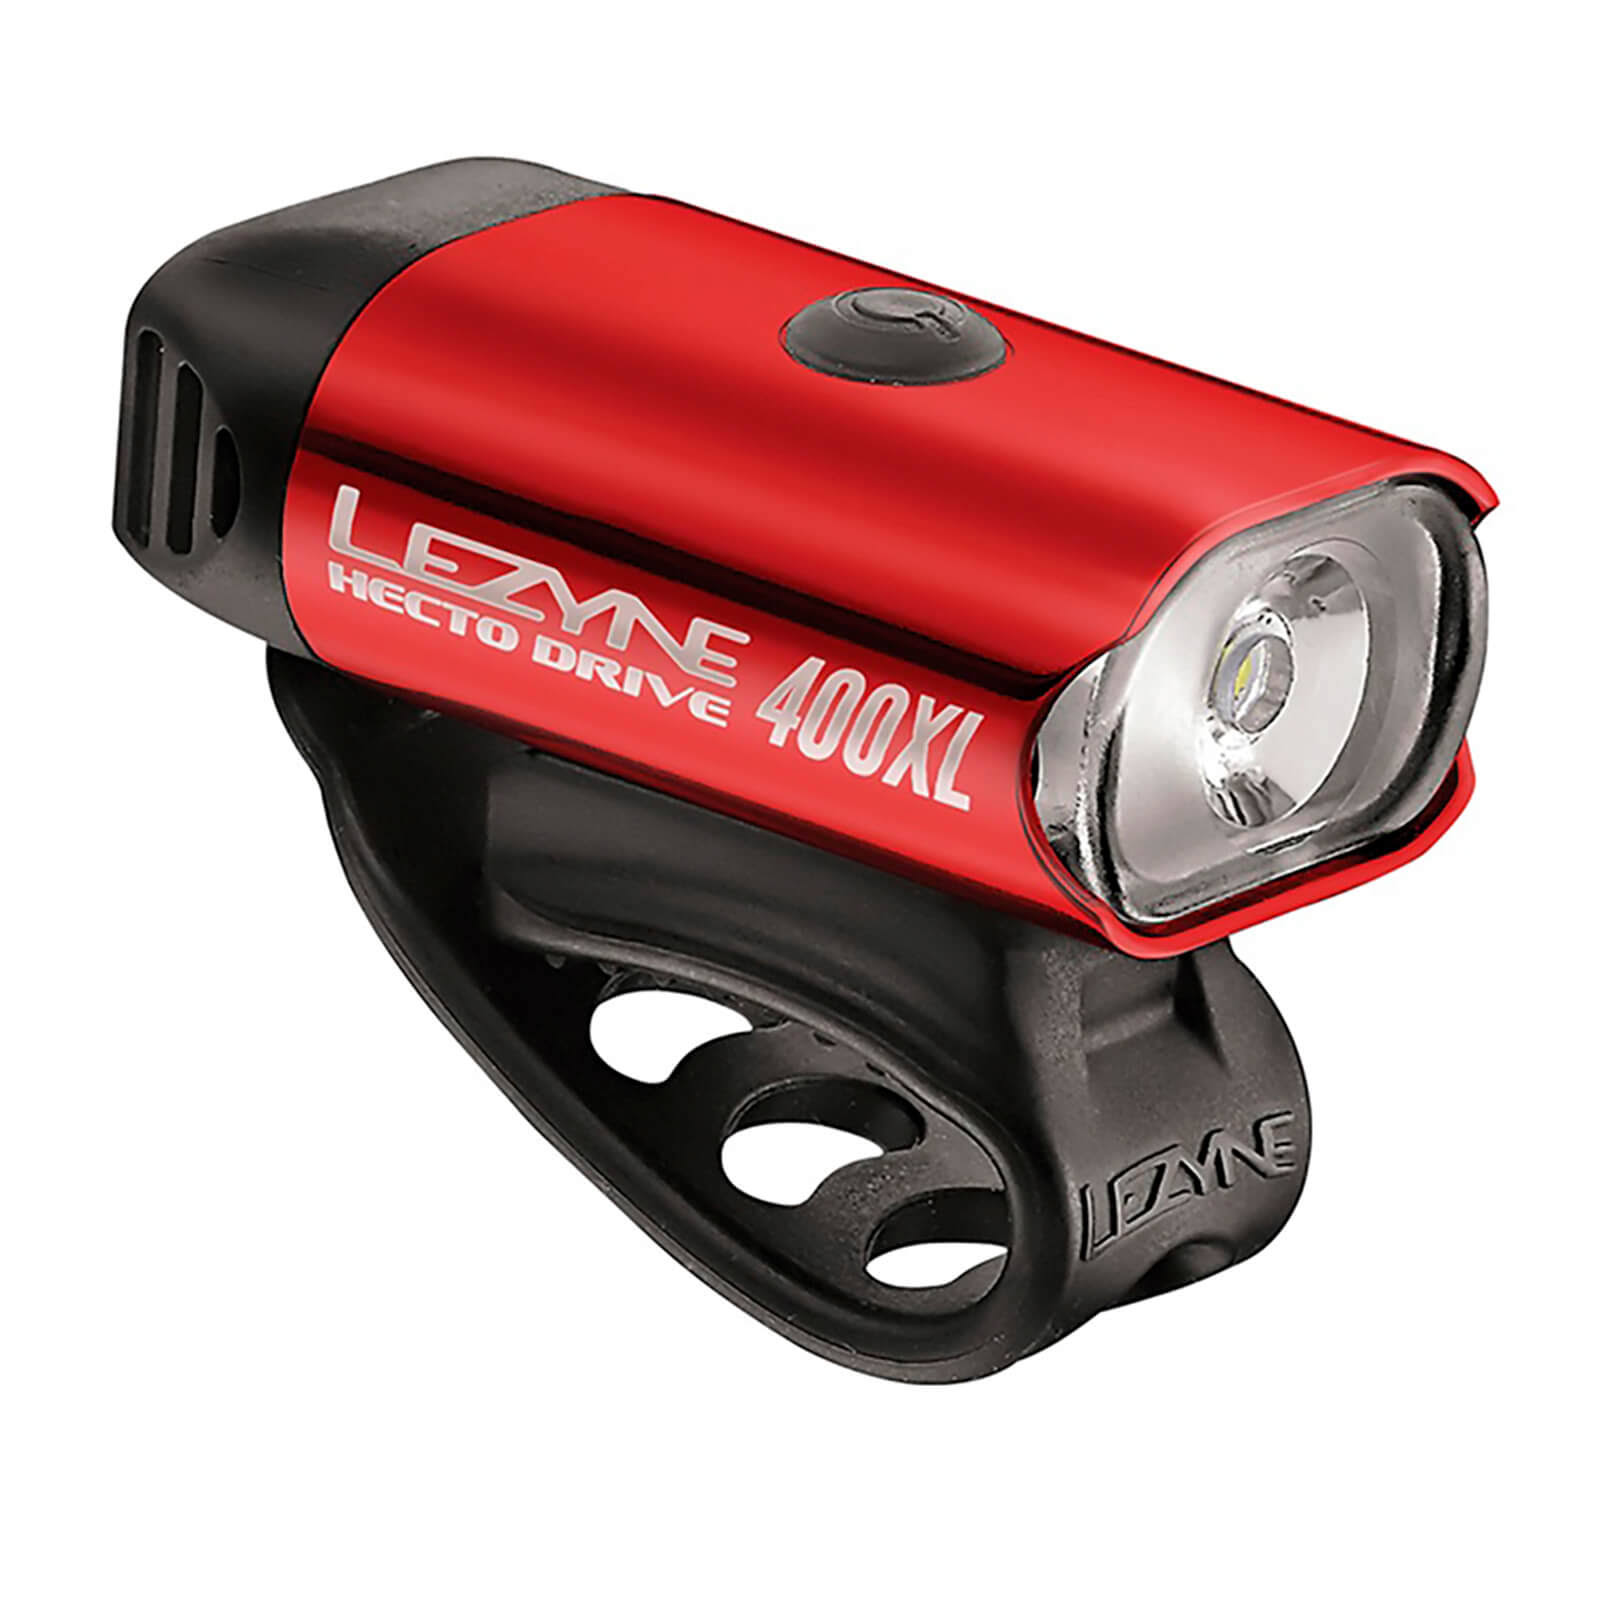 Lezyne Hecto Drive 400XL Headlight - Gloss Red